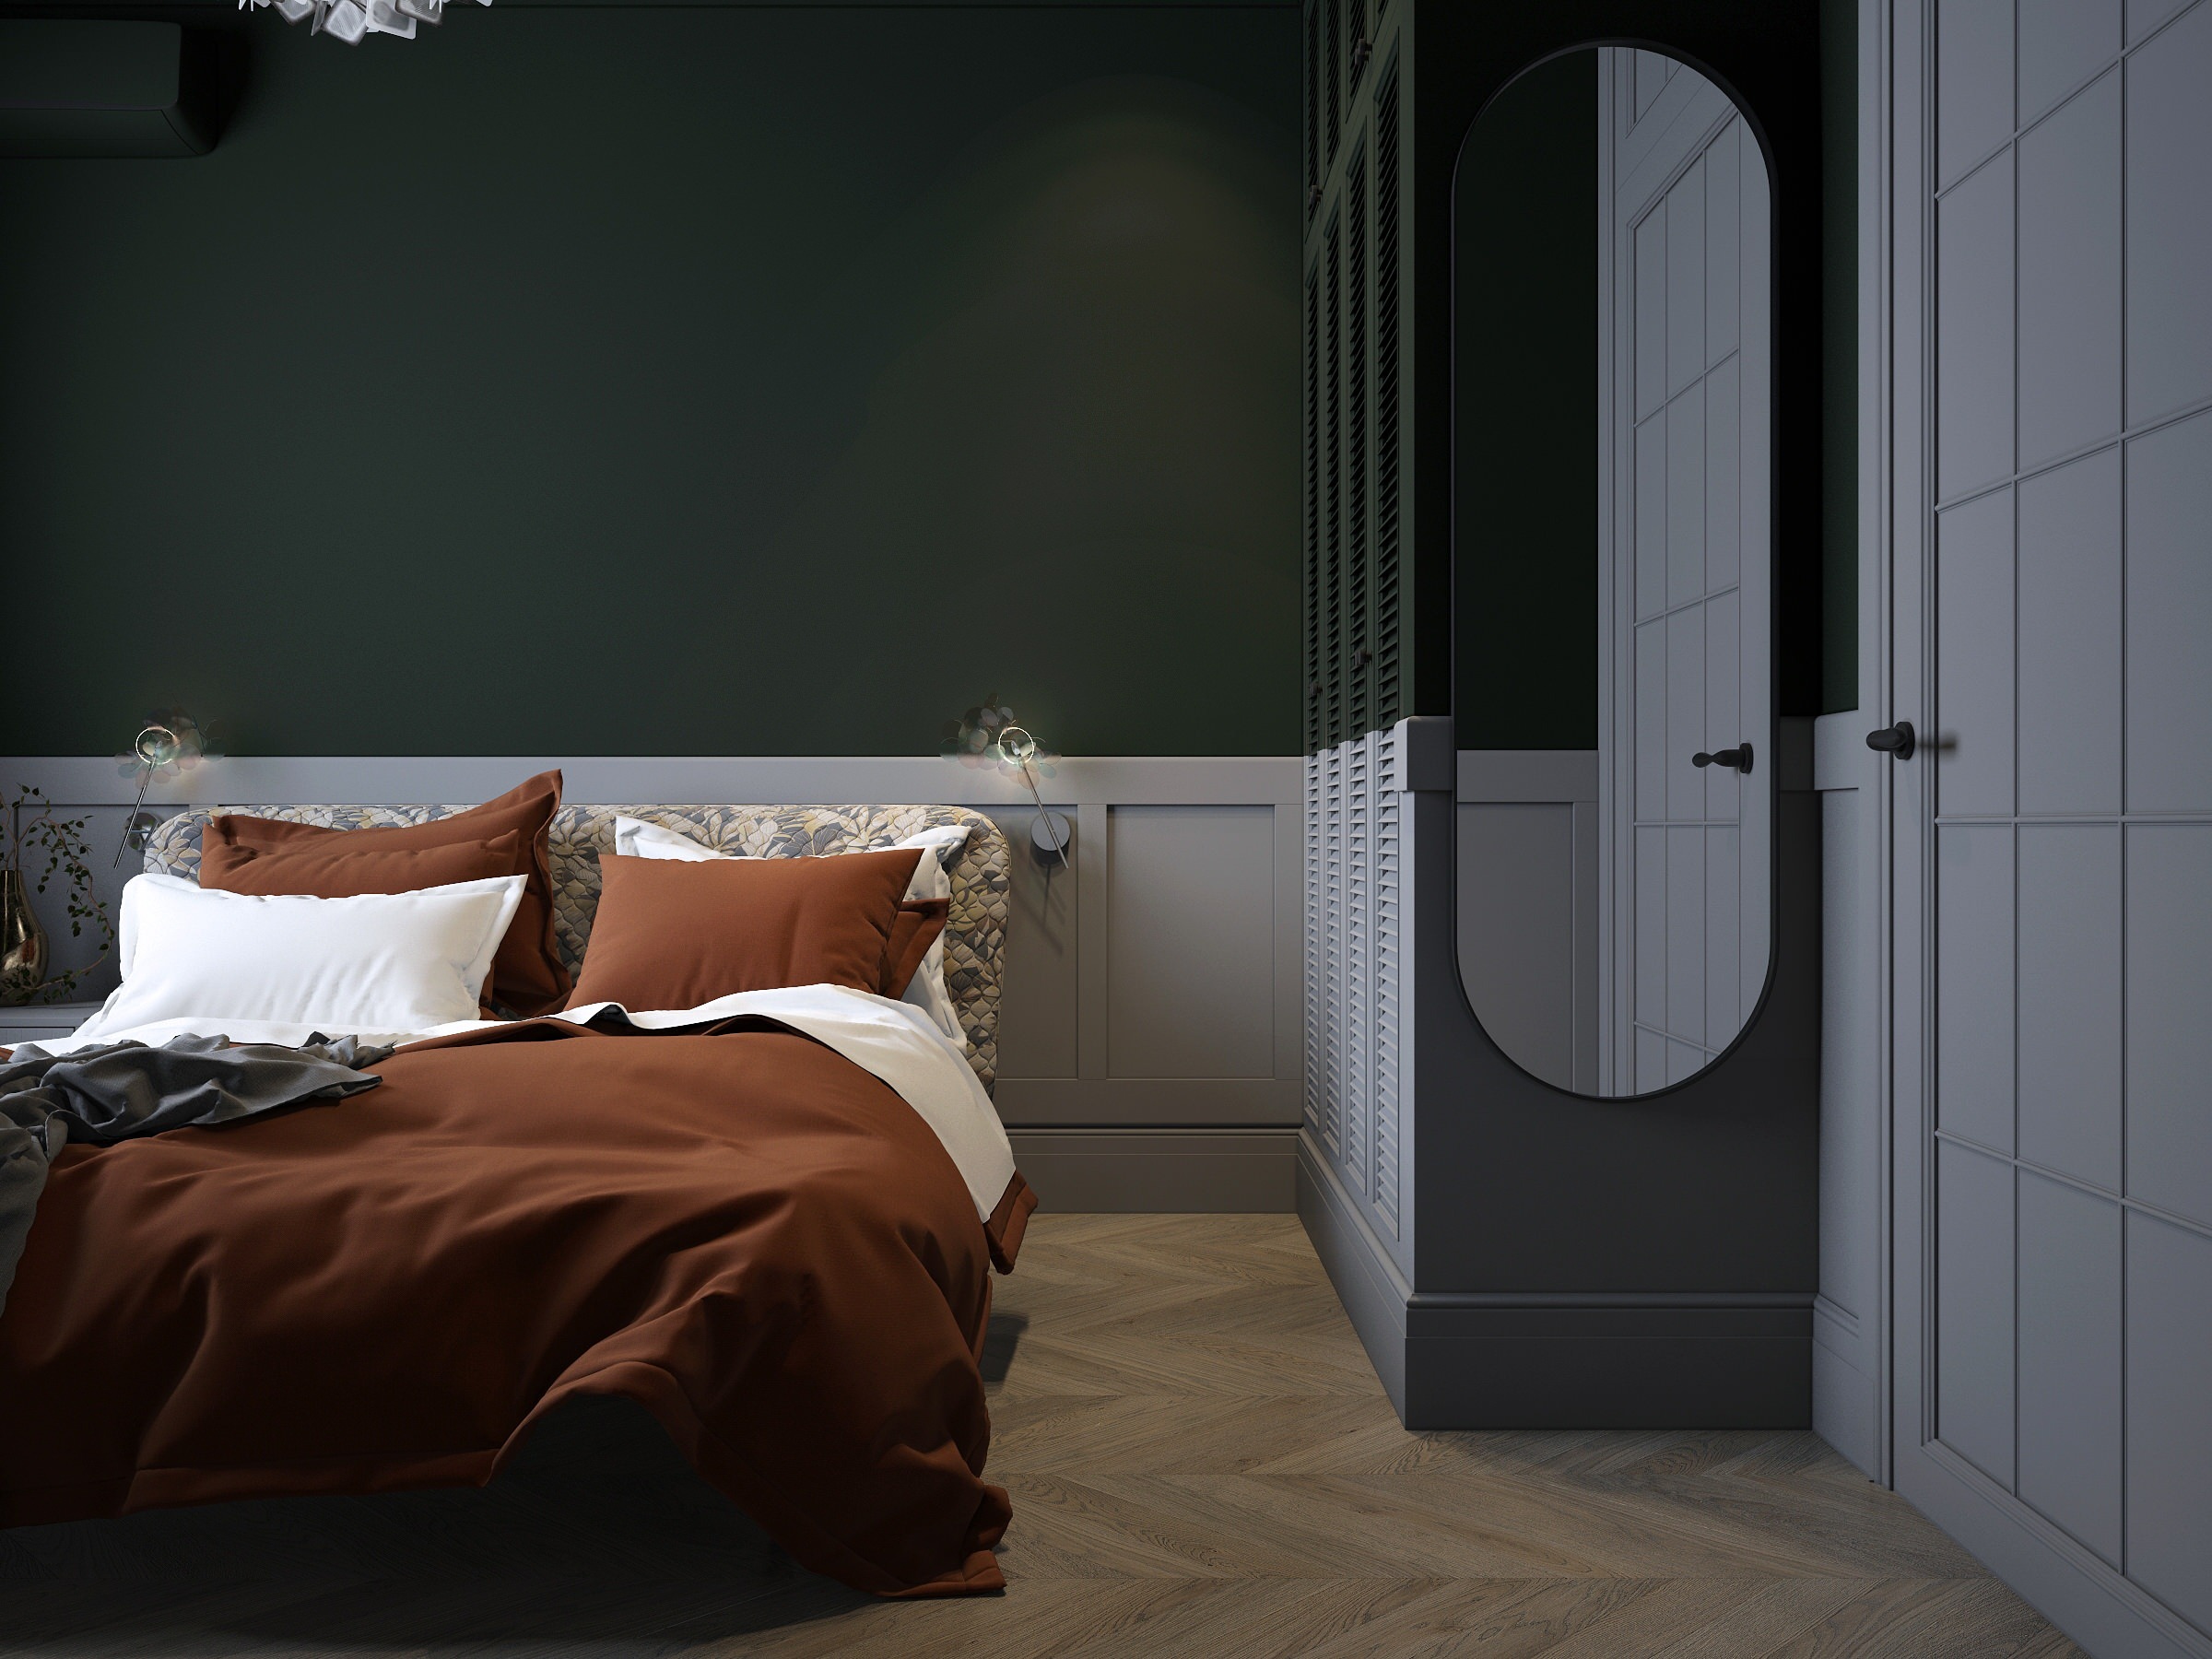 Интерьер спальни с зеркалом на двери и дверными жалюзи в классическом стиле